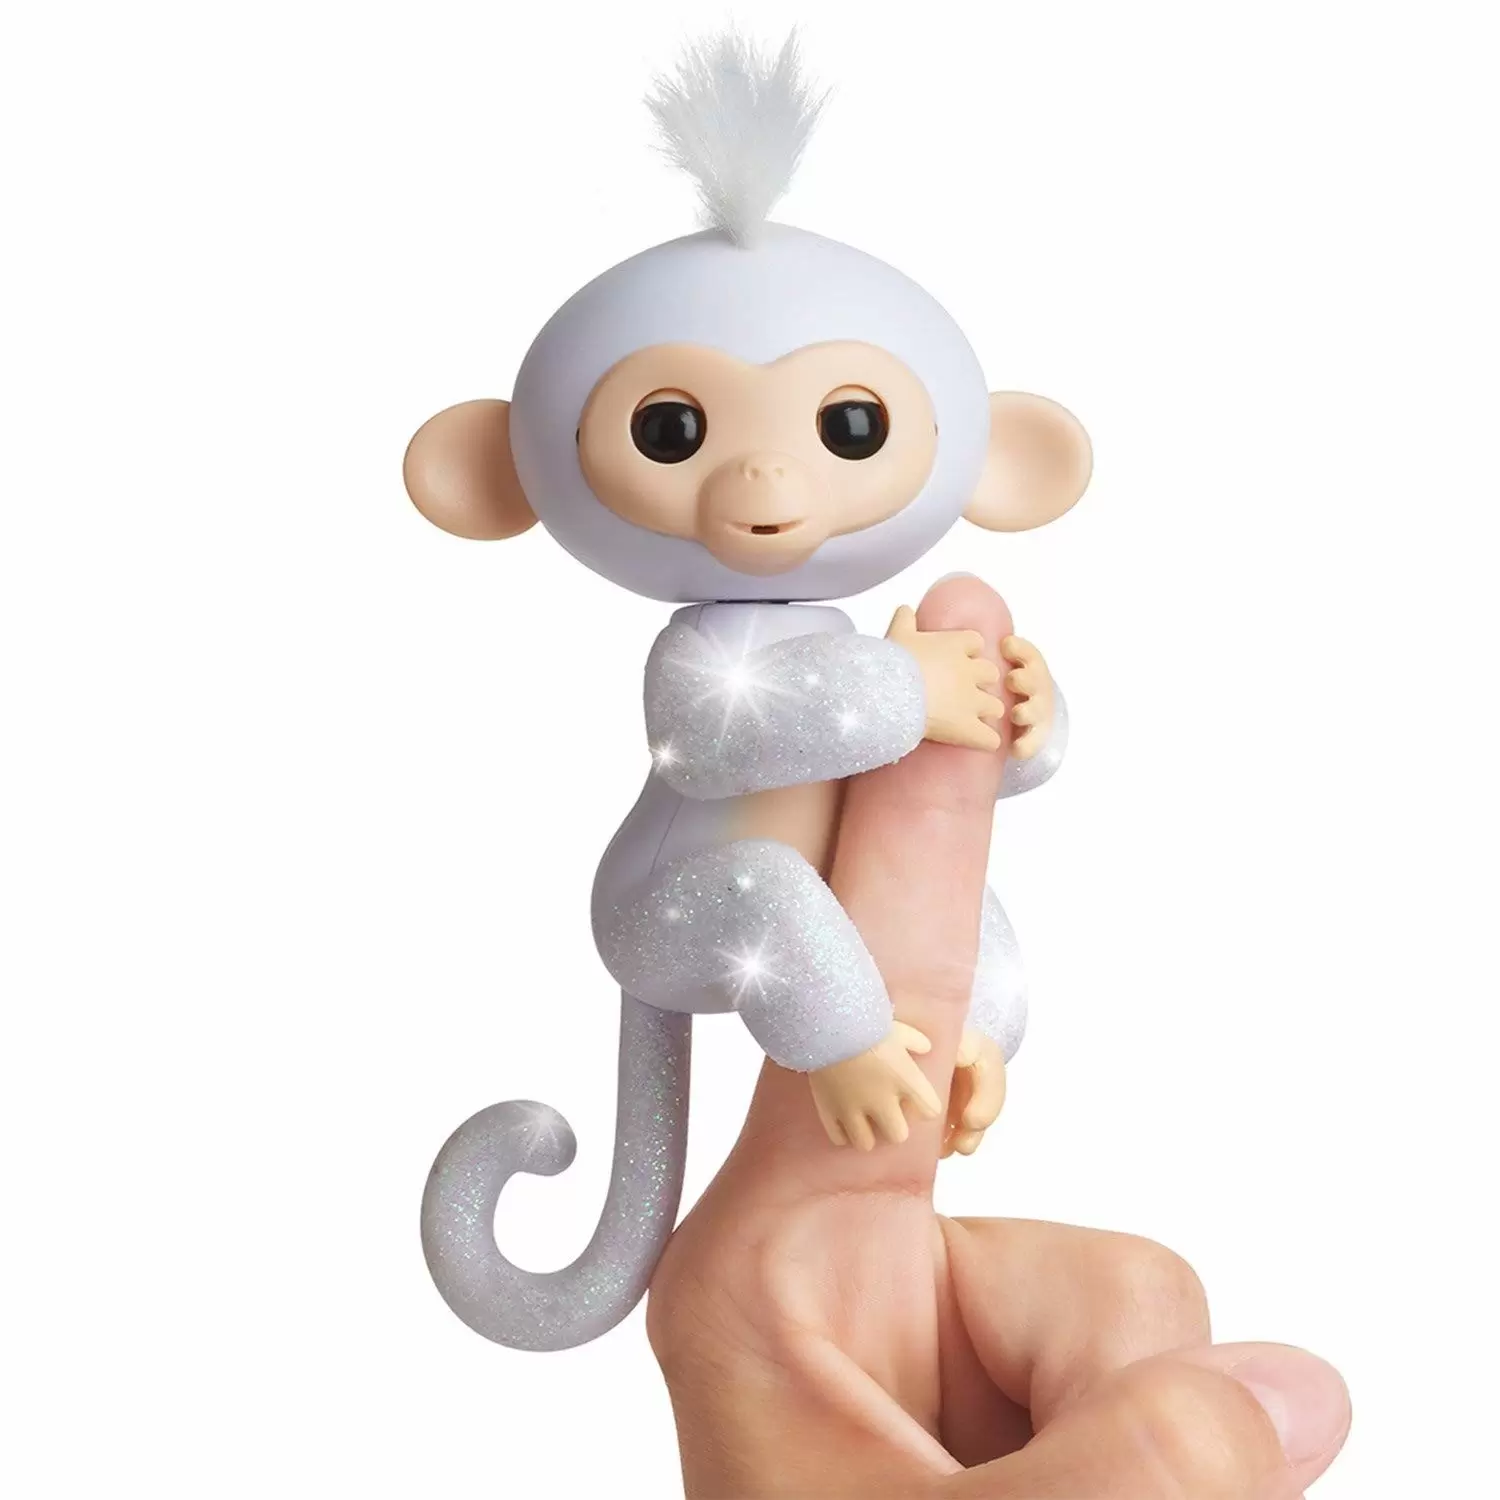 Fingerlings - Wow Wee - Baby Monkey Sugar